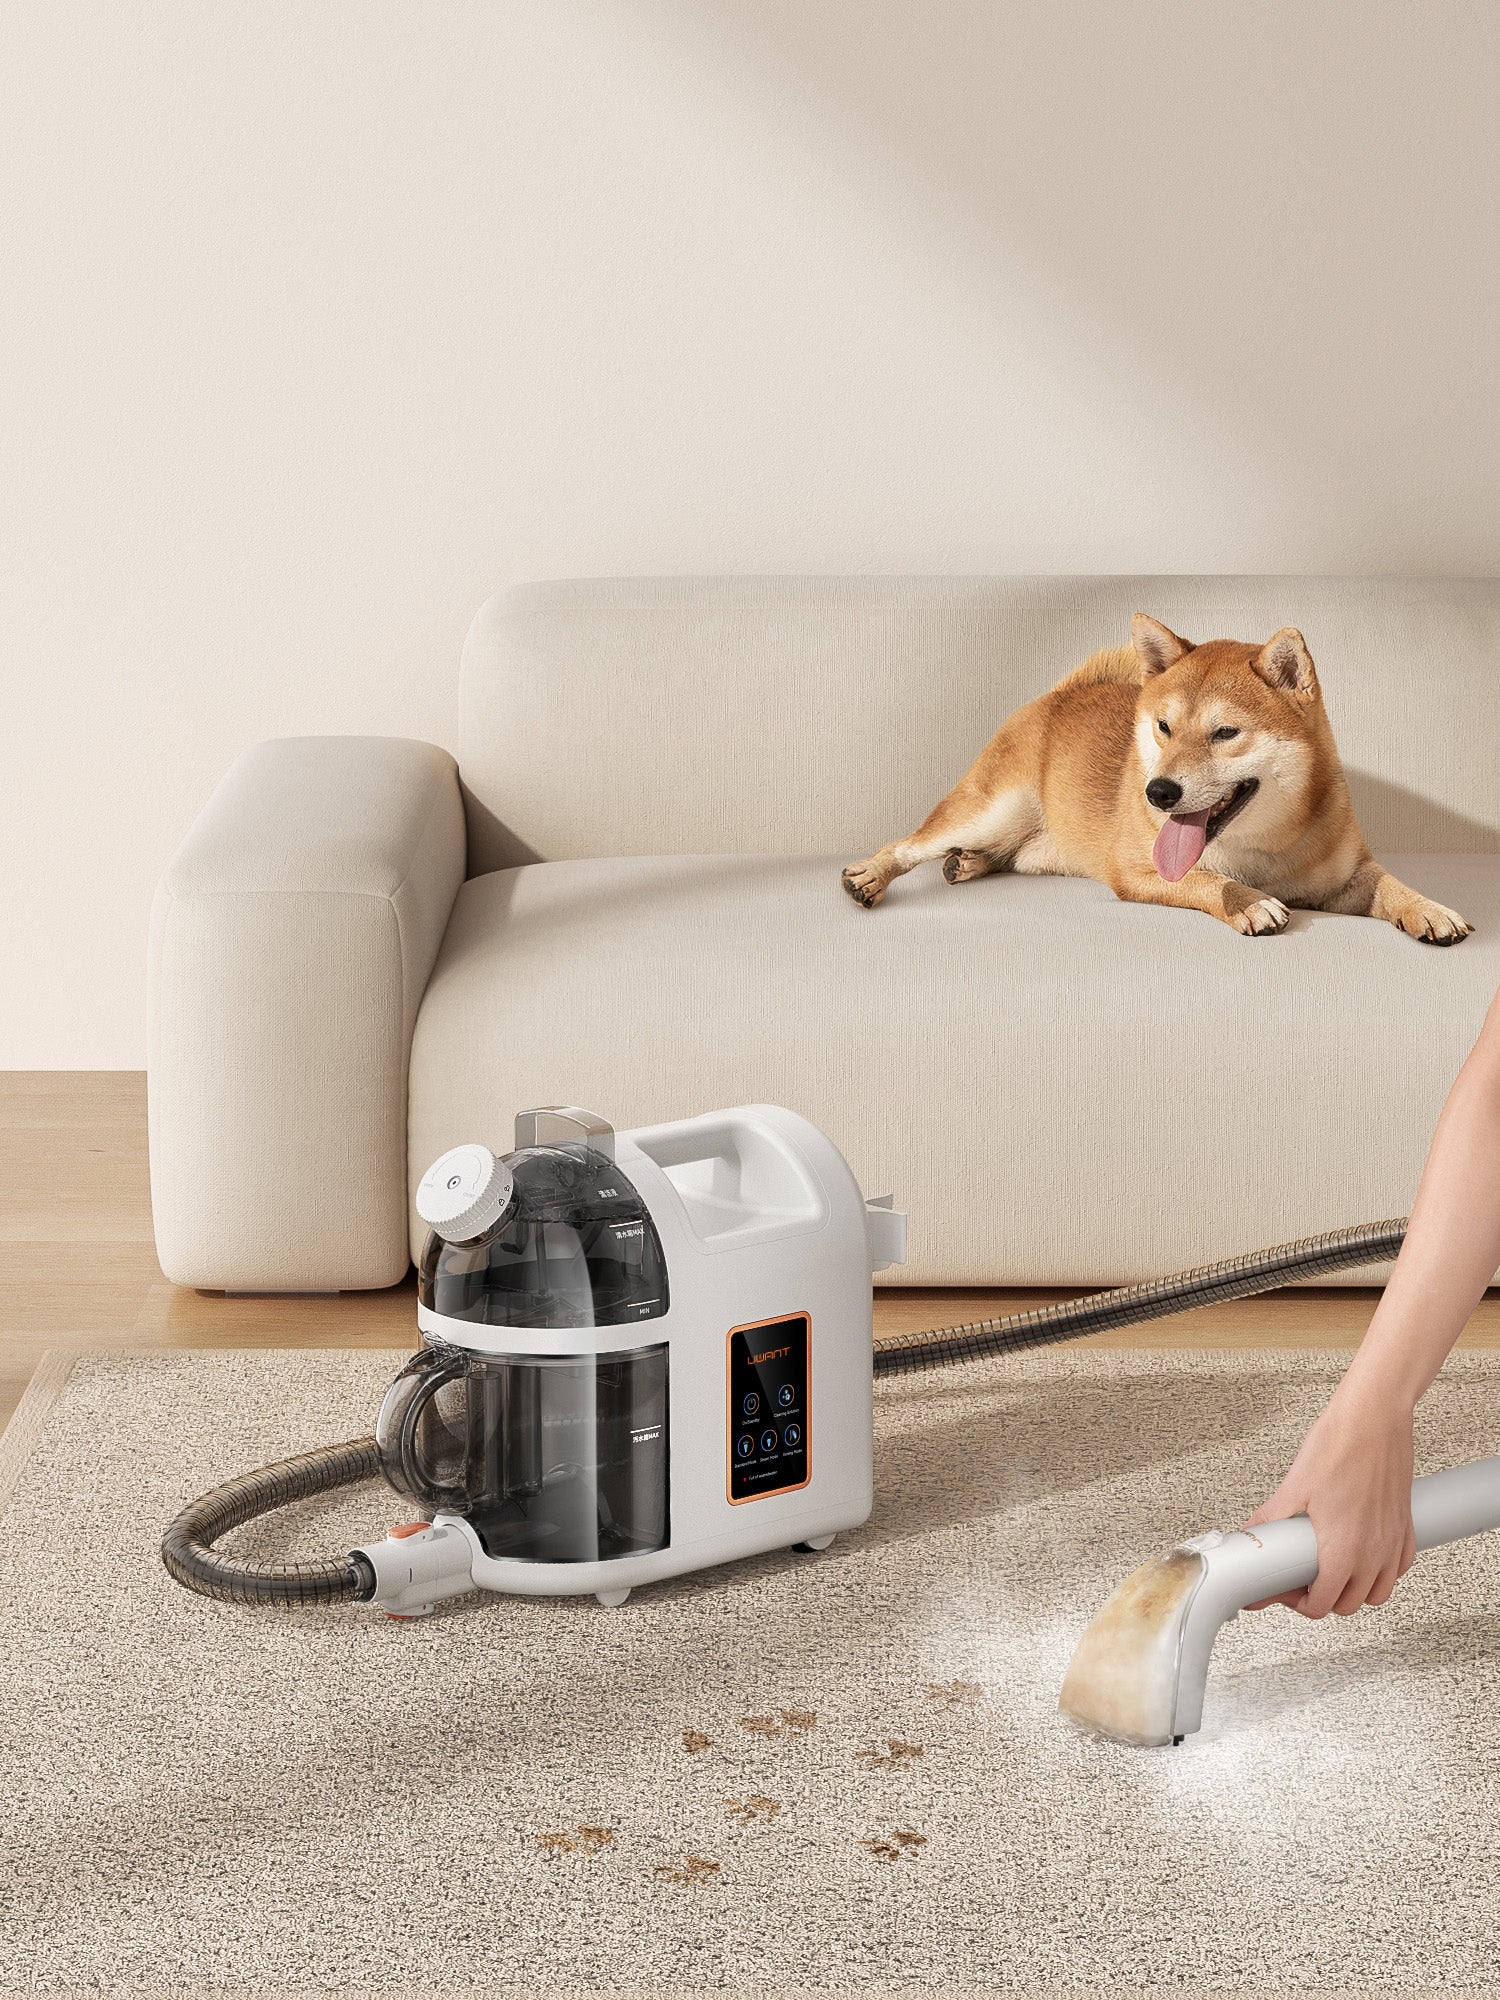 Uwant B200 Vacuum cleaner Usage Scenarios